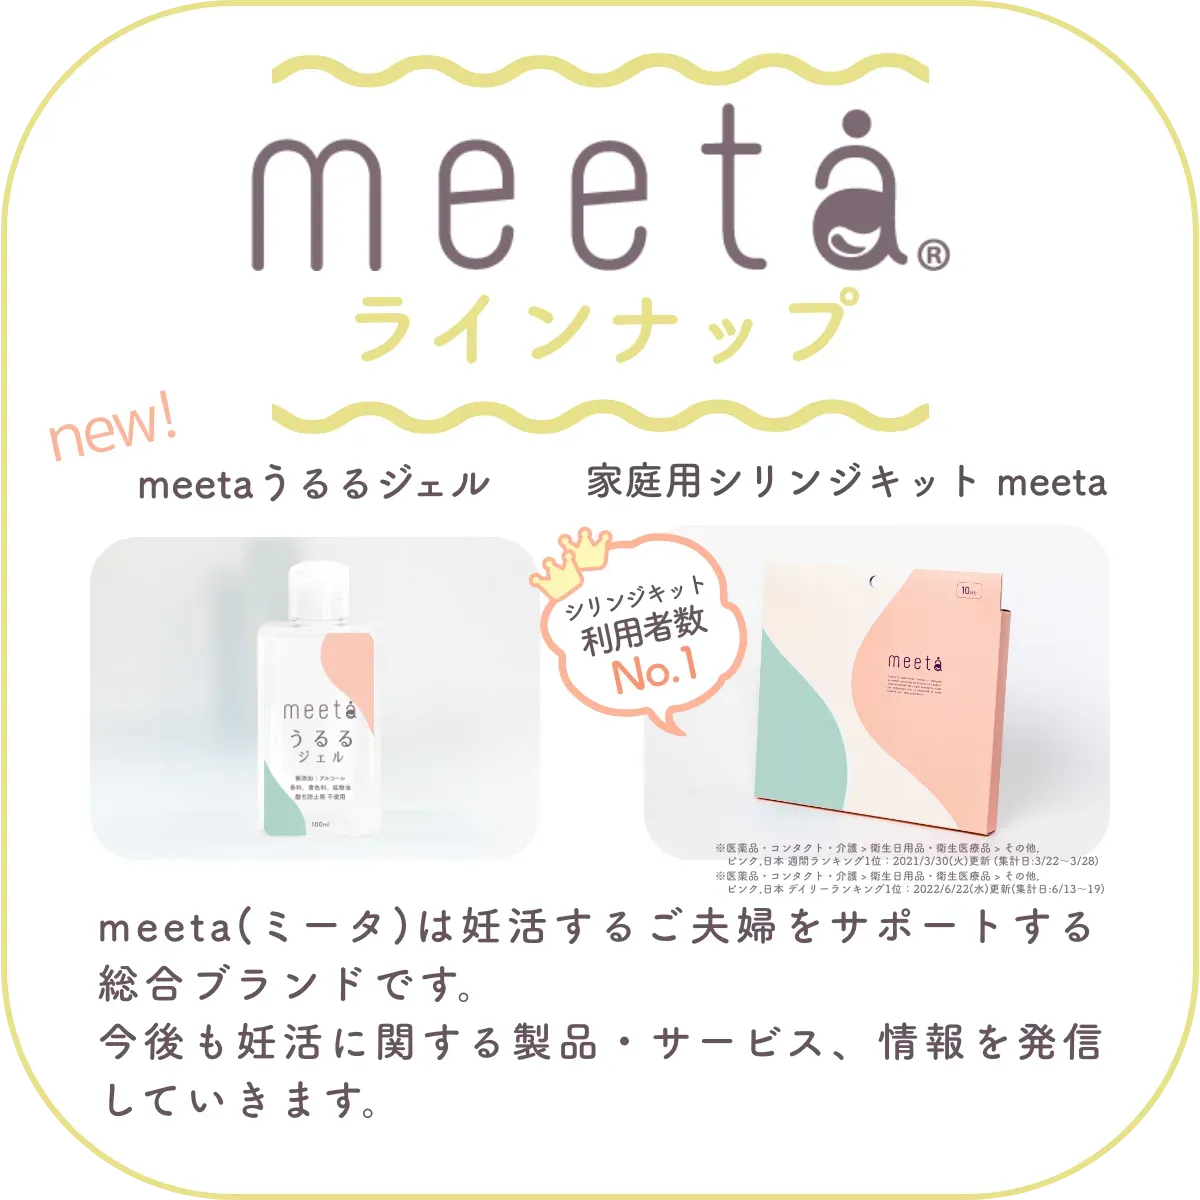 meetaラインナップ：meeta (ミータ)　うるるジェル、家庭用シリンジ法のキットmeeta　meeta（ミータ）は妊活するご夫婦をサポートする総合ブランドです。今後も妊活に関する製品・サービス、情報を発信していきます。